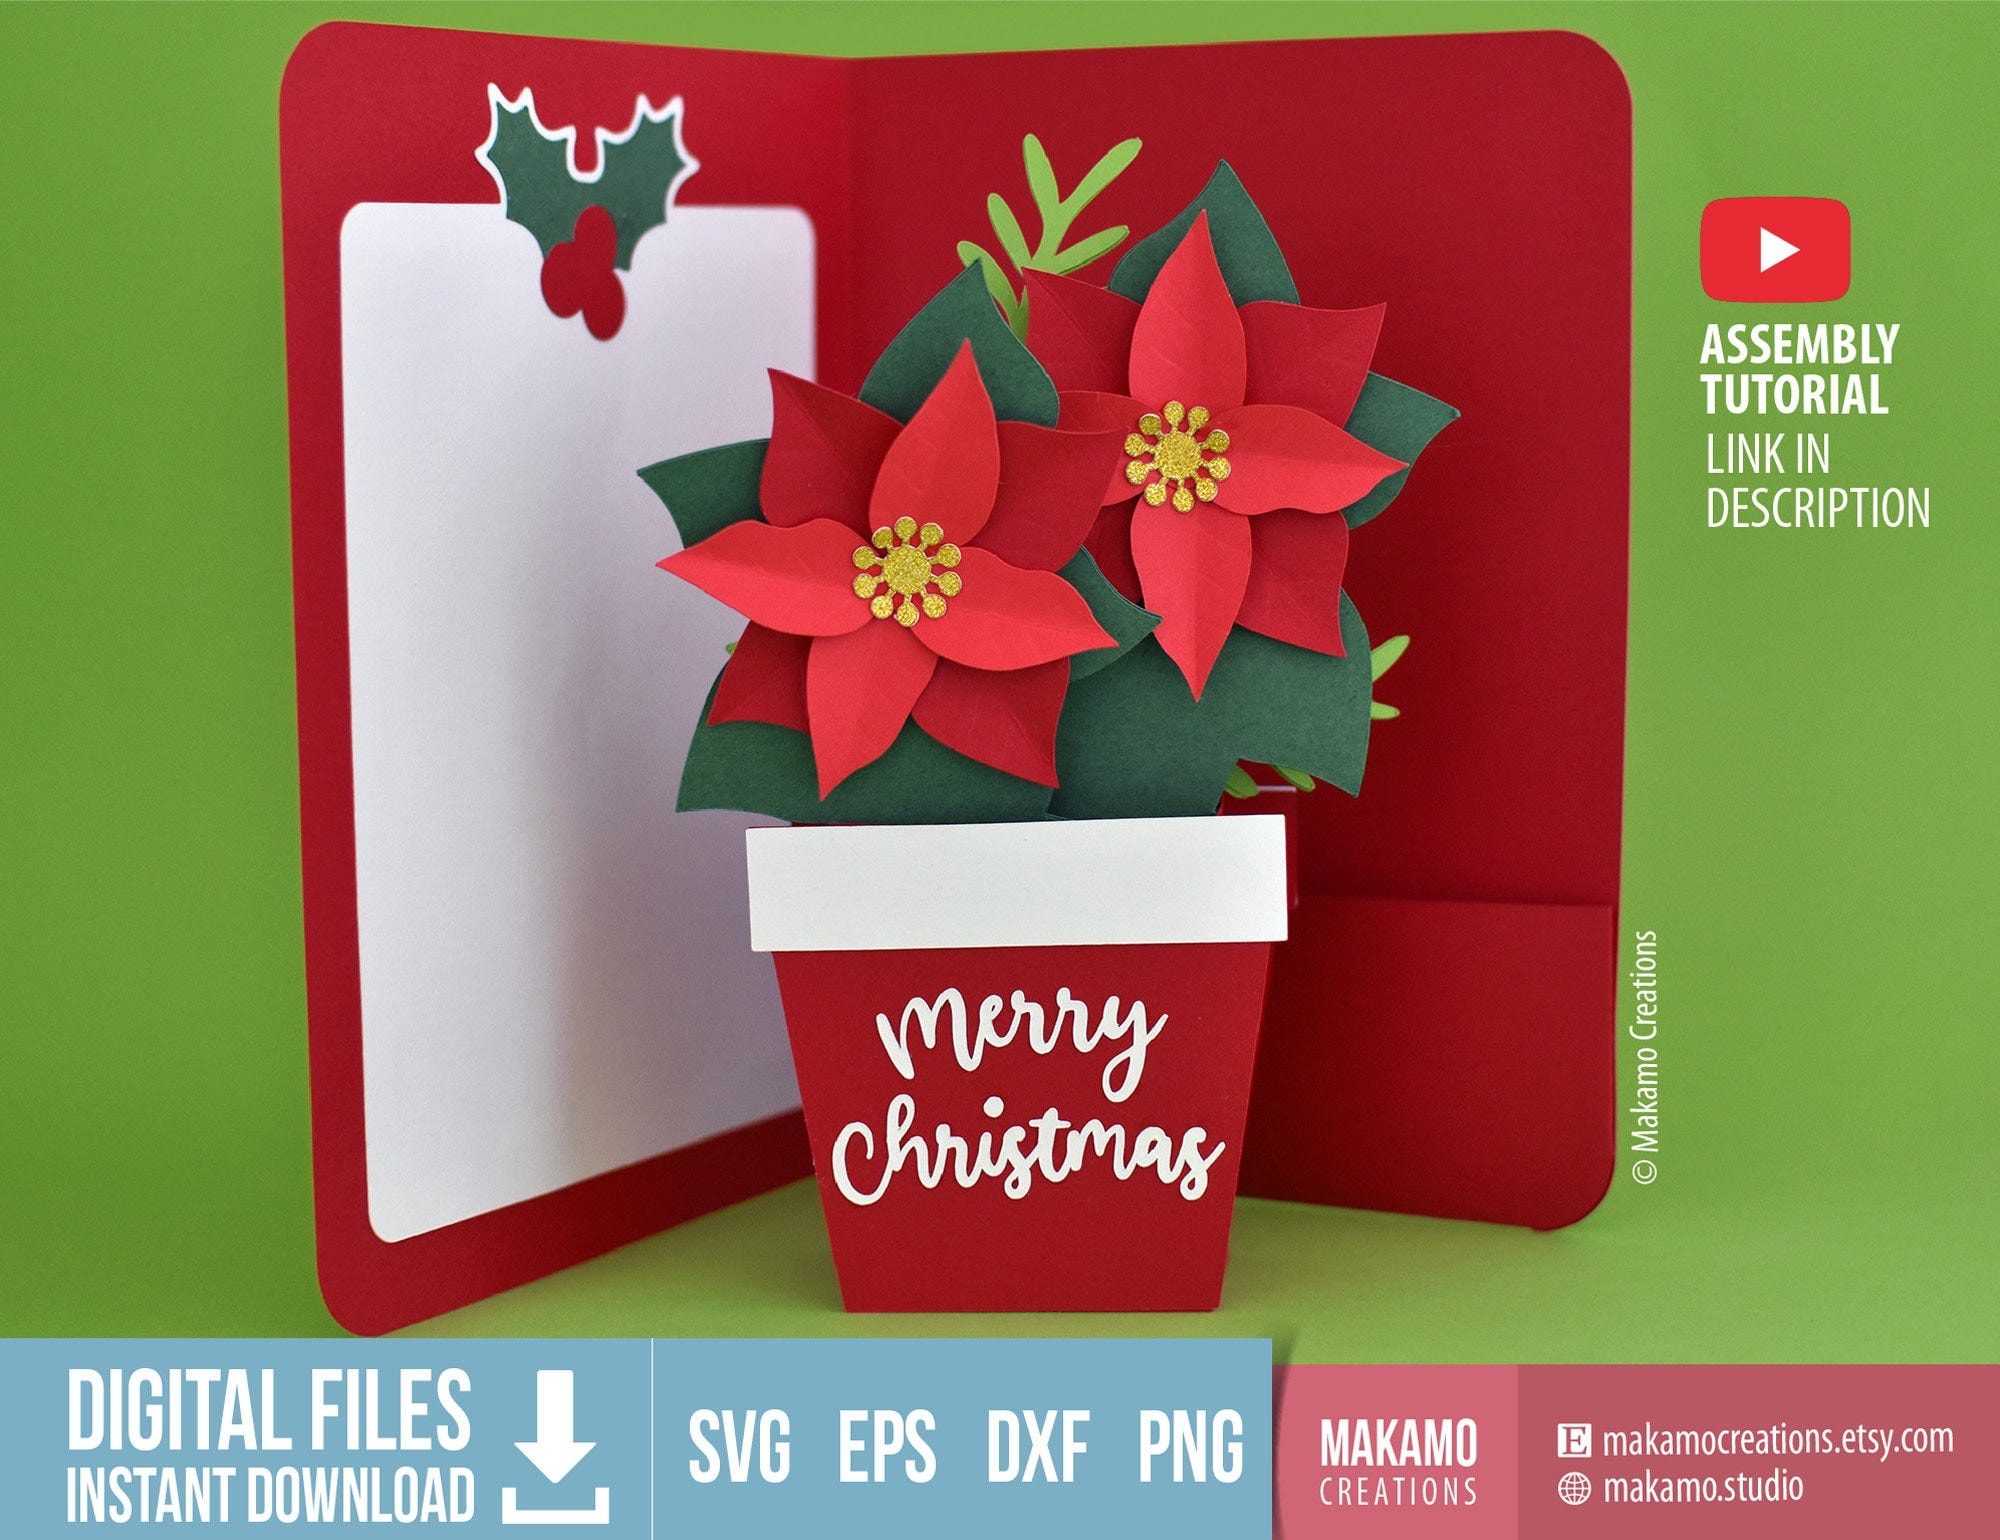 Christmas card SVG, 3D Poinsettia Box Card SVG Template, DIY Christmas Pop Up card, Digital cut files for Cricut, Poinsettia decor